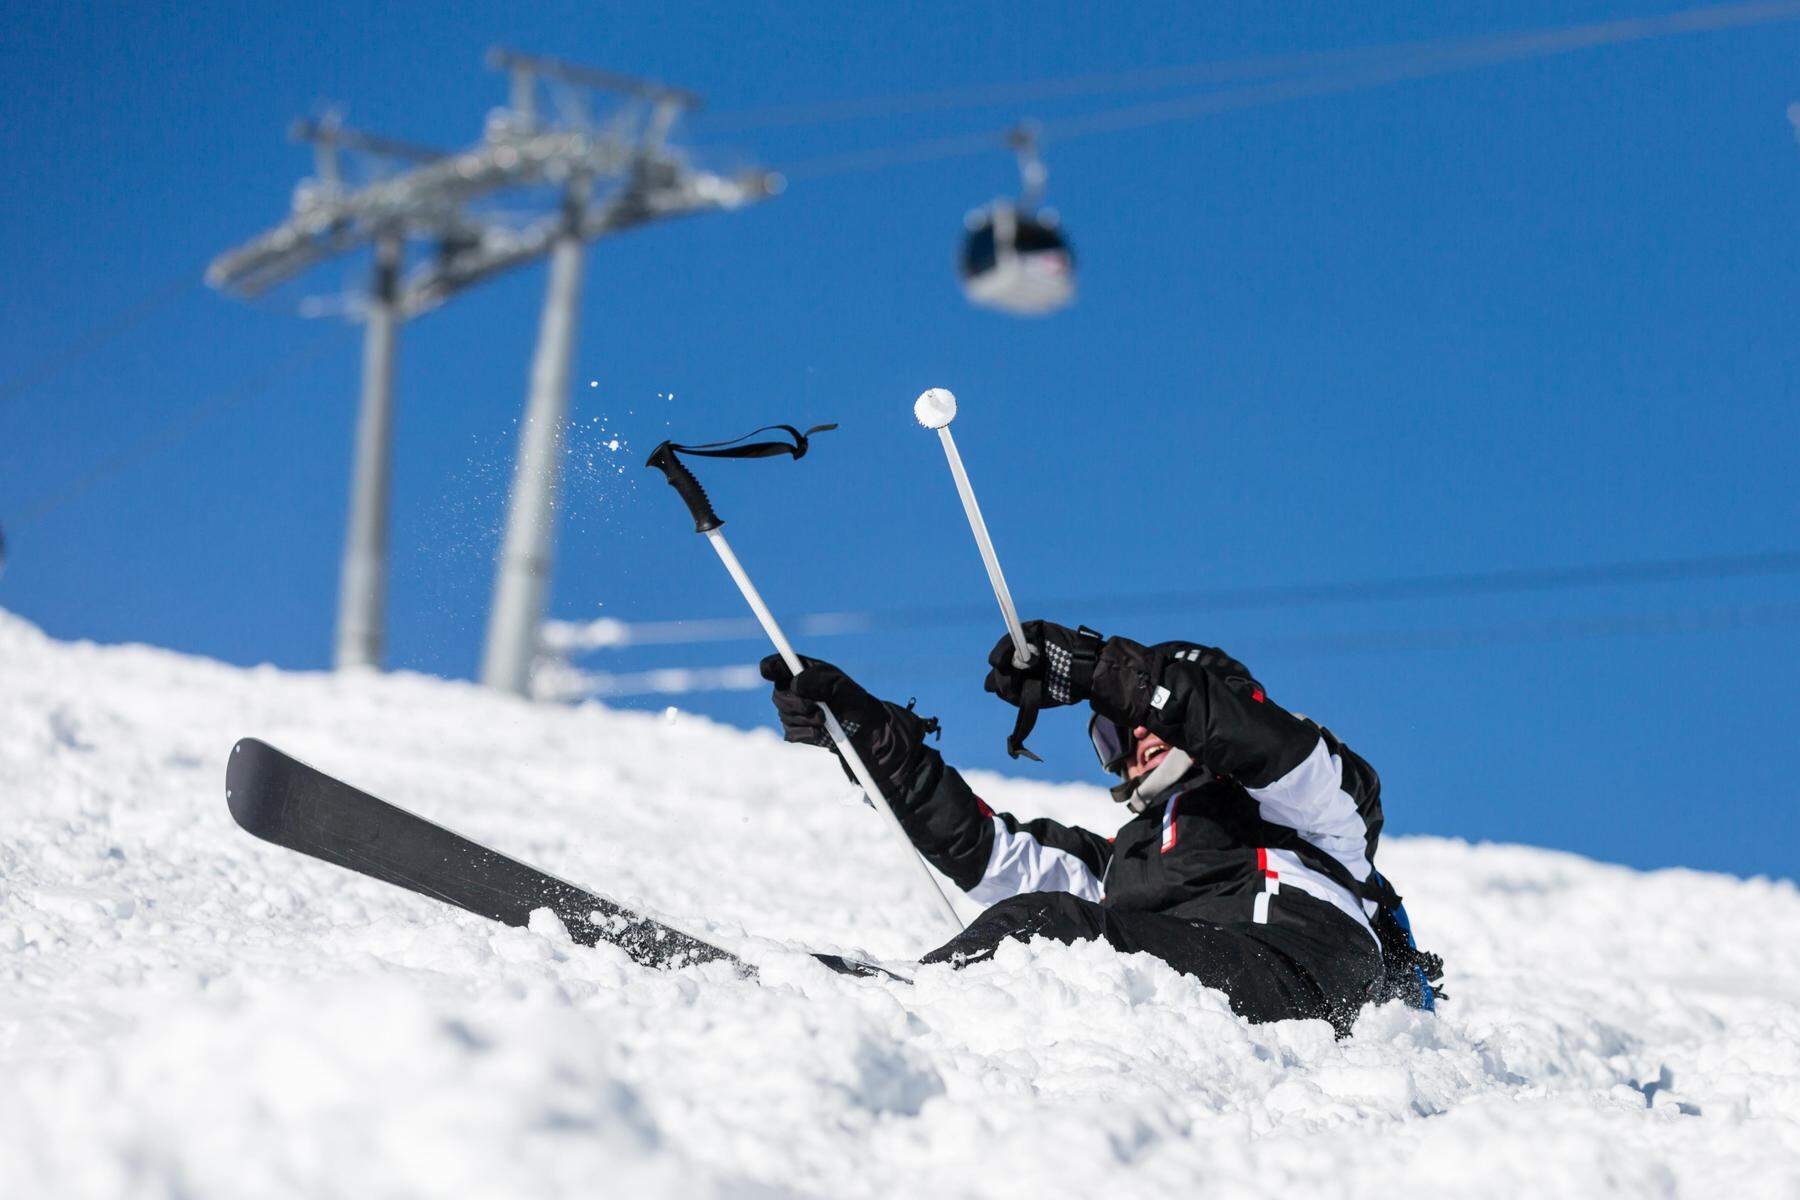 Bergrettung im Einsatz | Skifahrer bei Kollision auf dem Nassfeld schwer verletzt